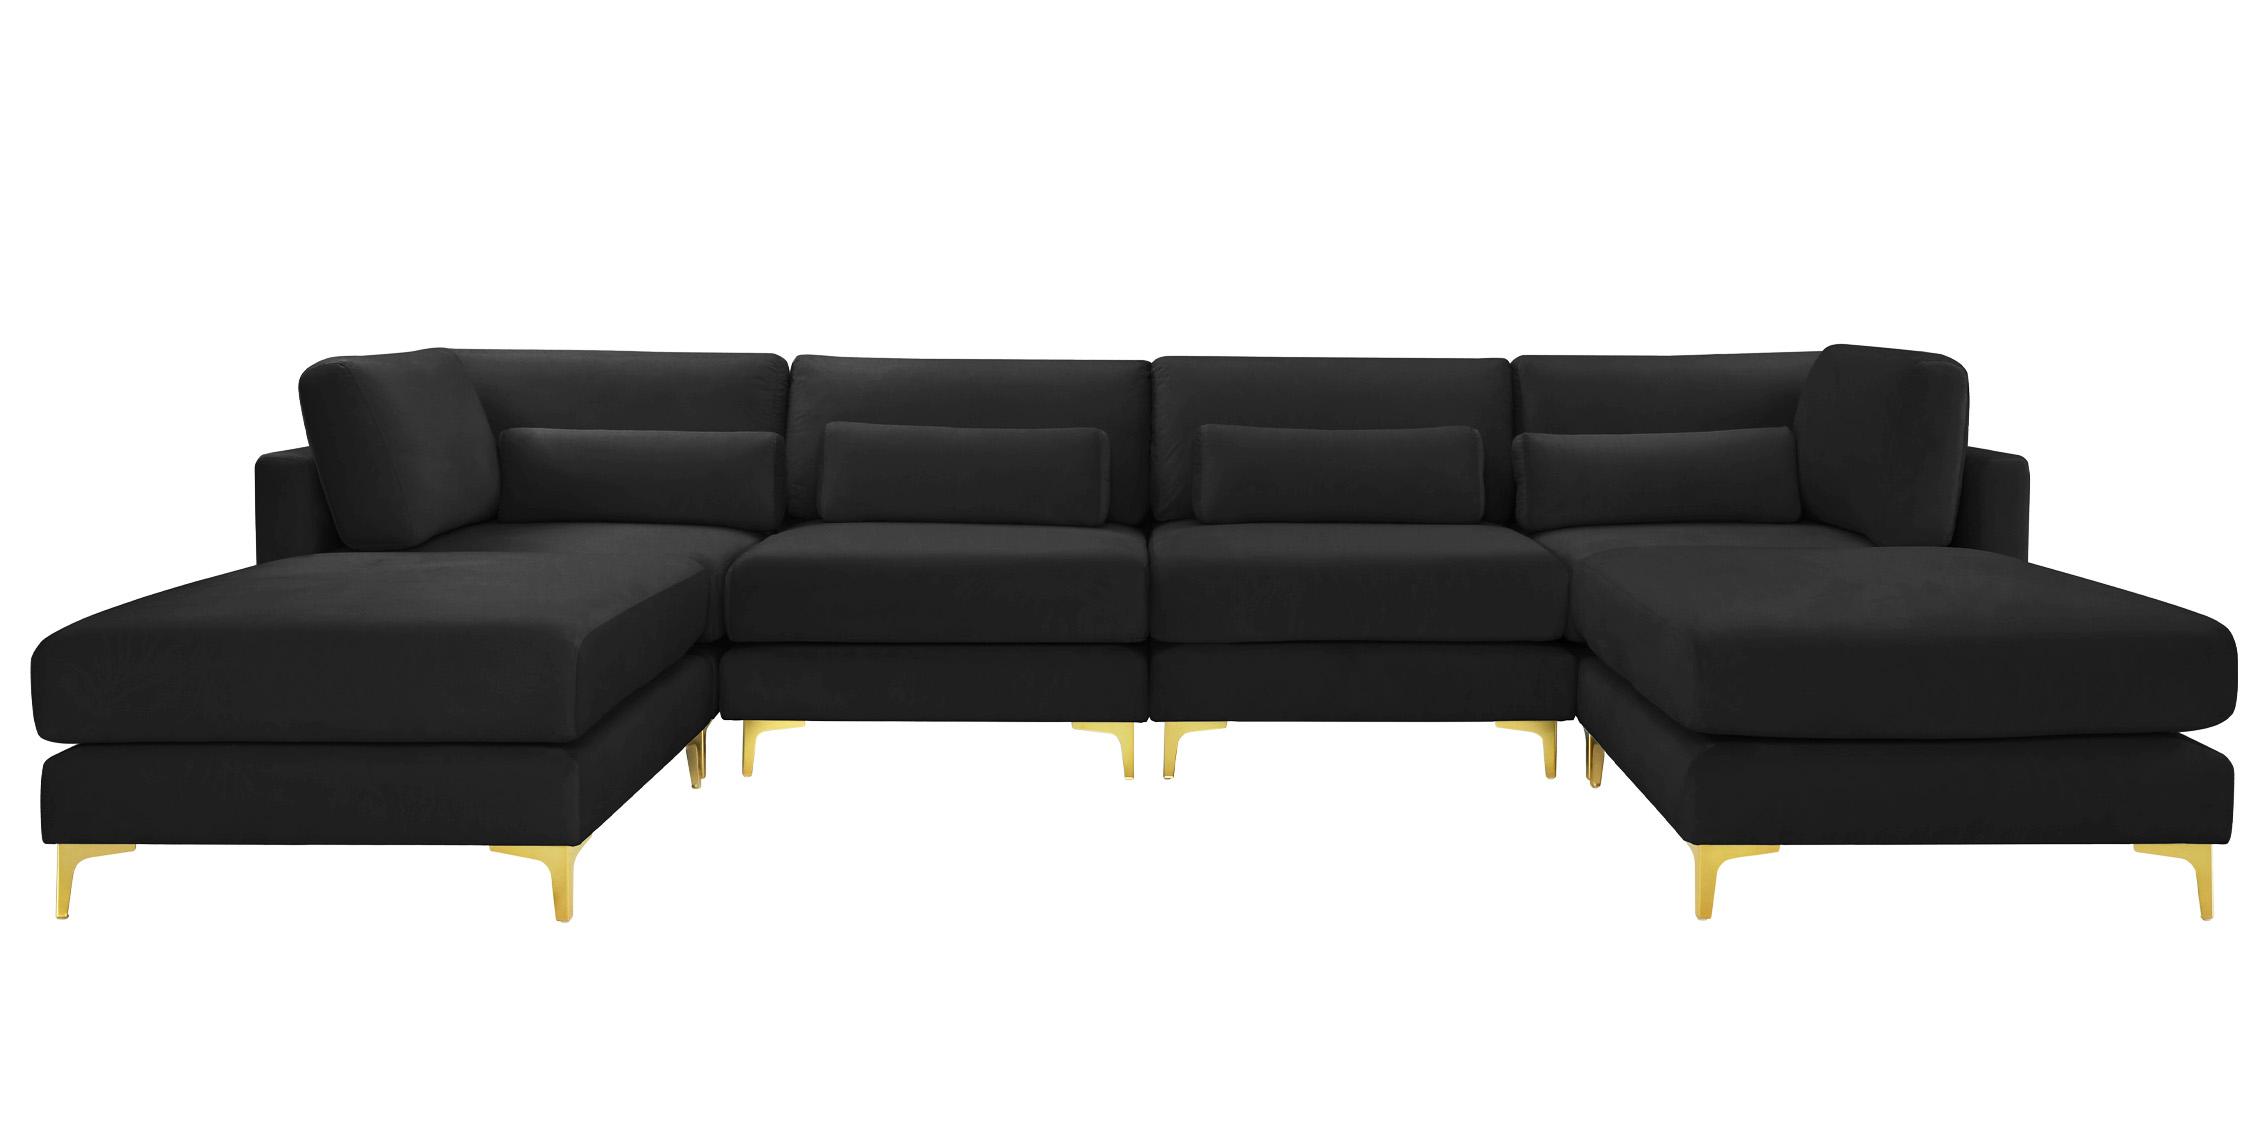 

    
Meridian Furniture JULIA 605Black-Sec6B Modular Sectional Sofa Black 605Black-Sec6B
